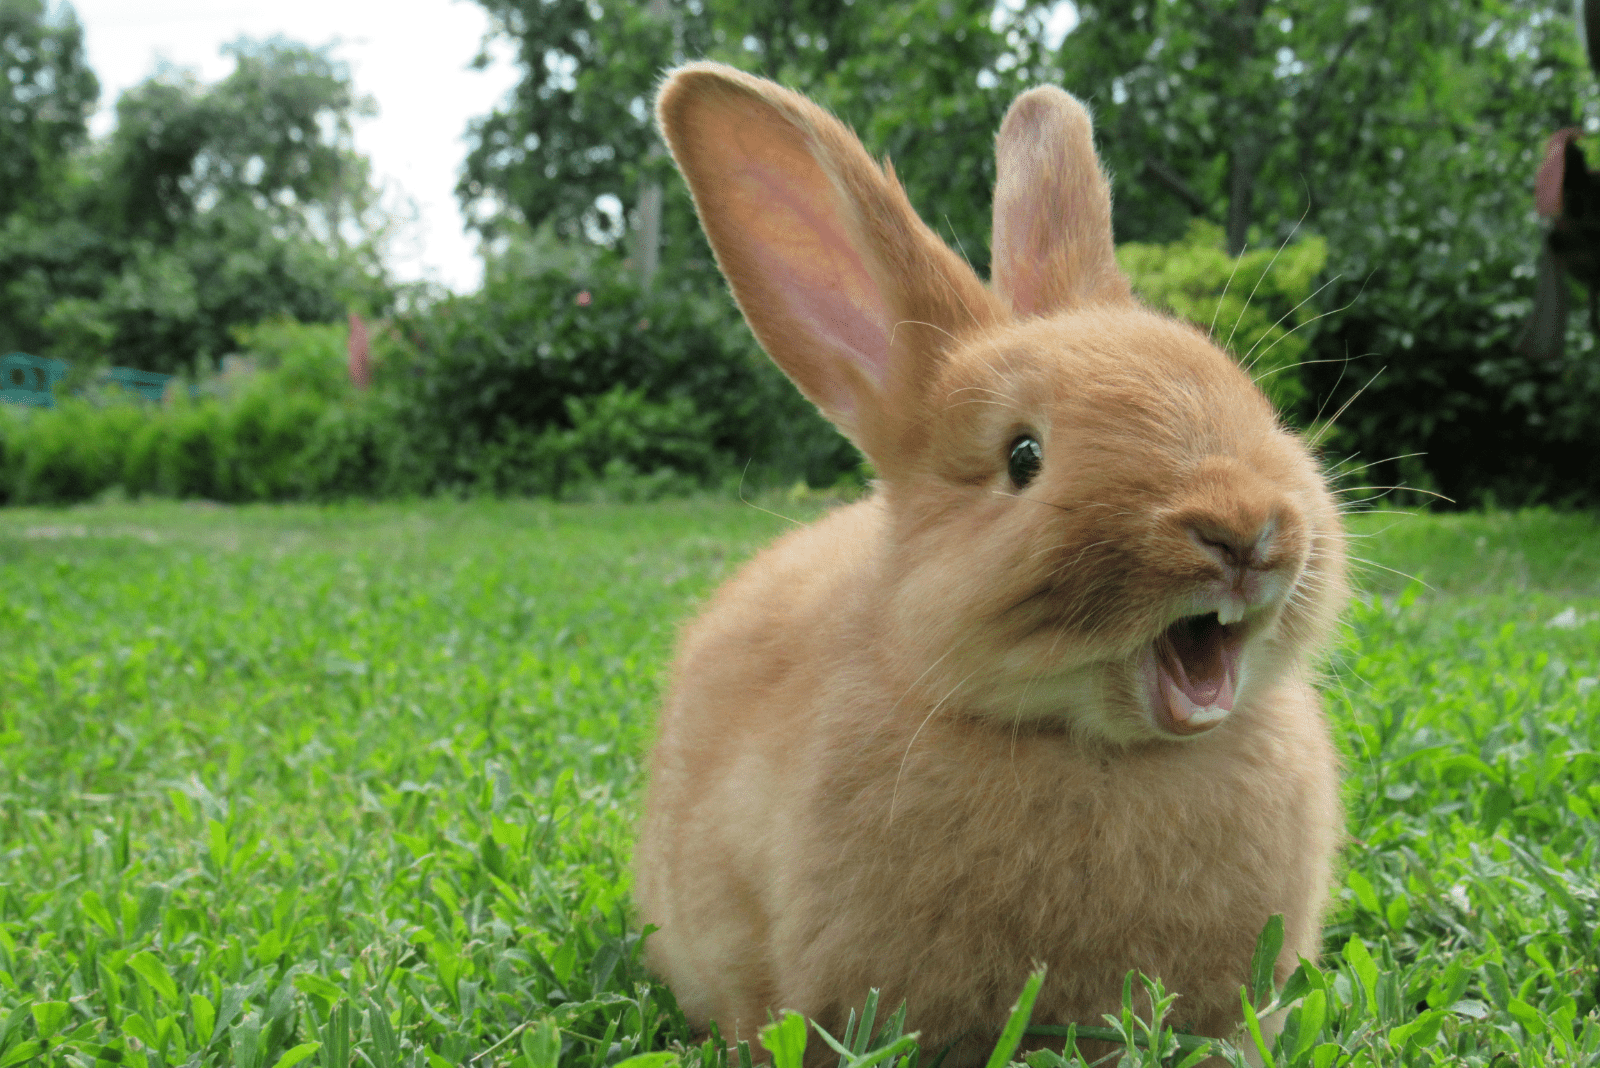 le lapin est debout sur l'herbe verte